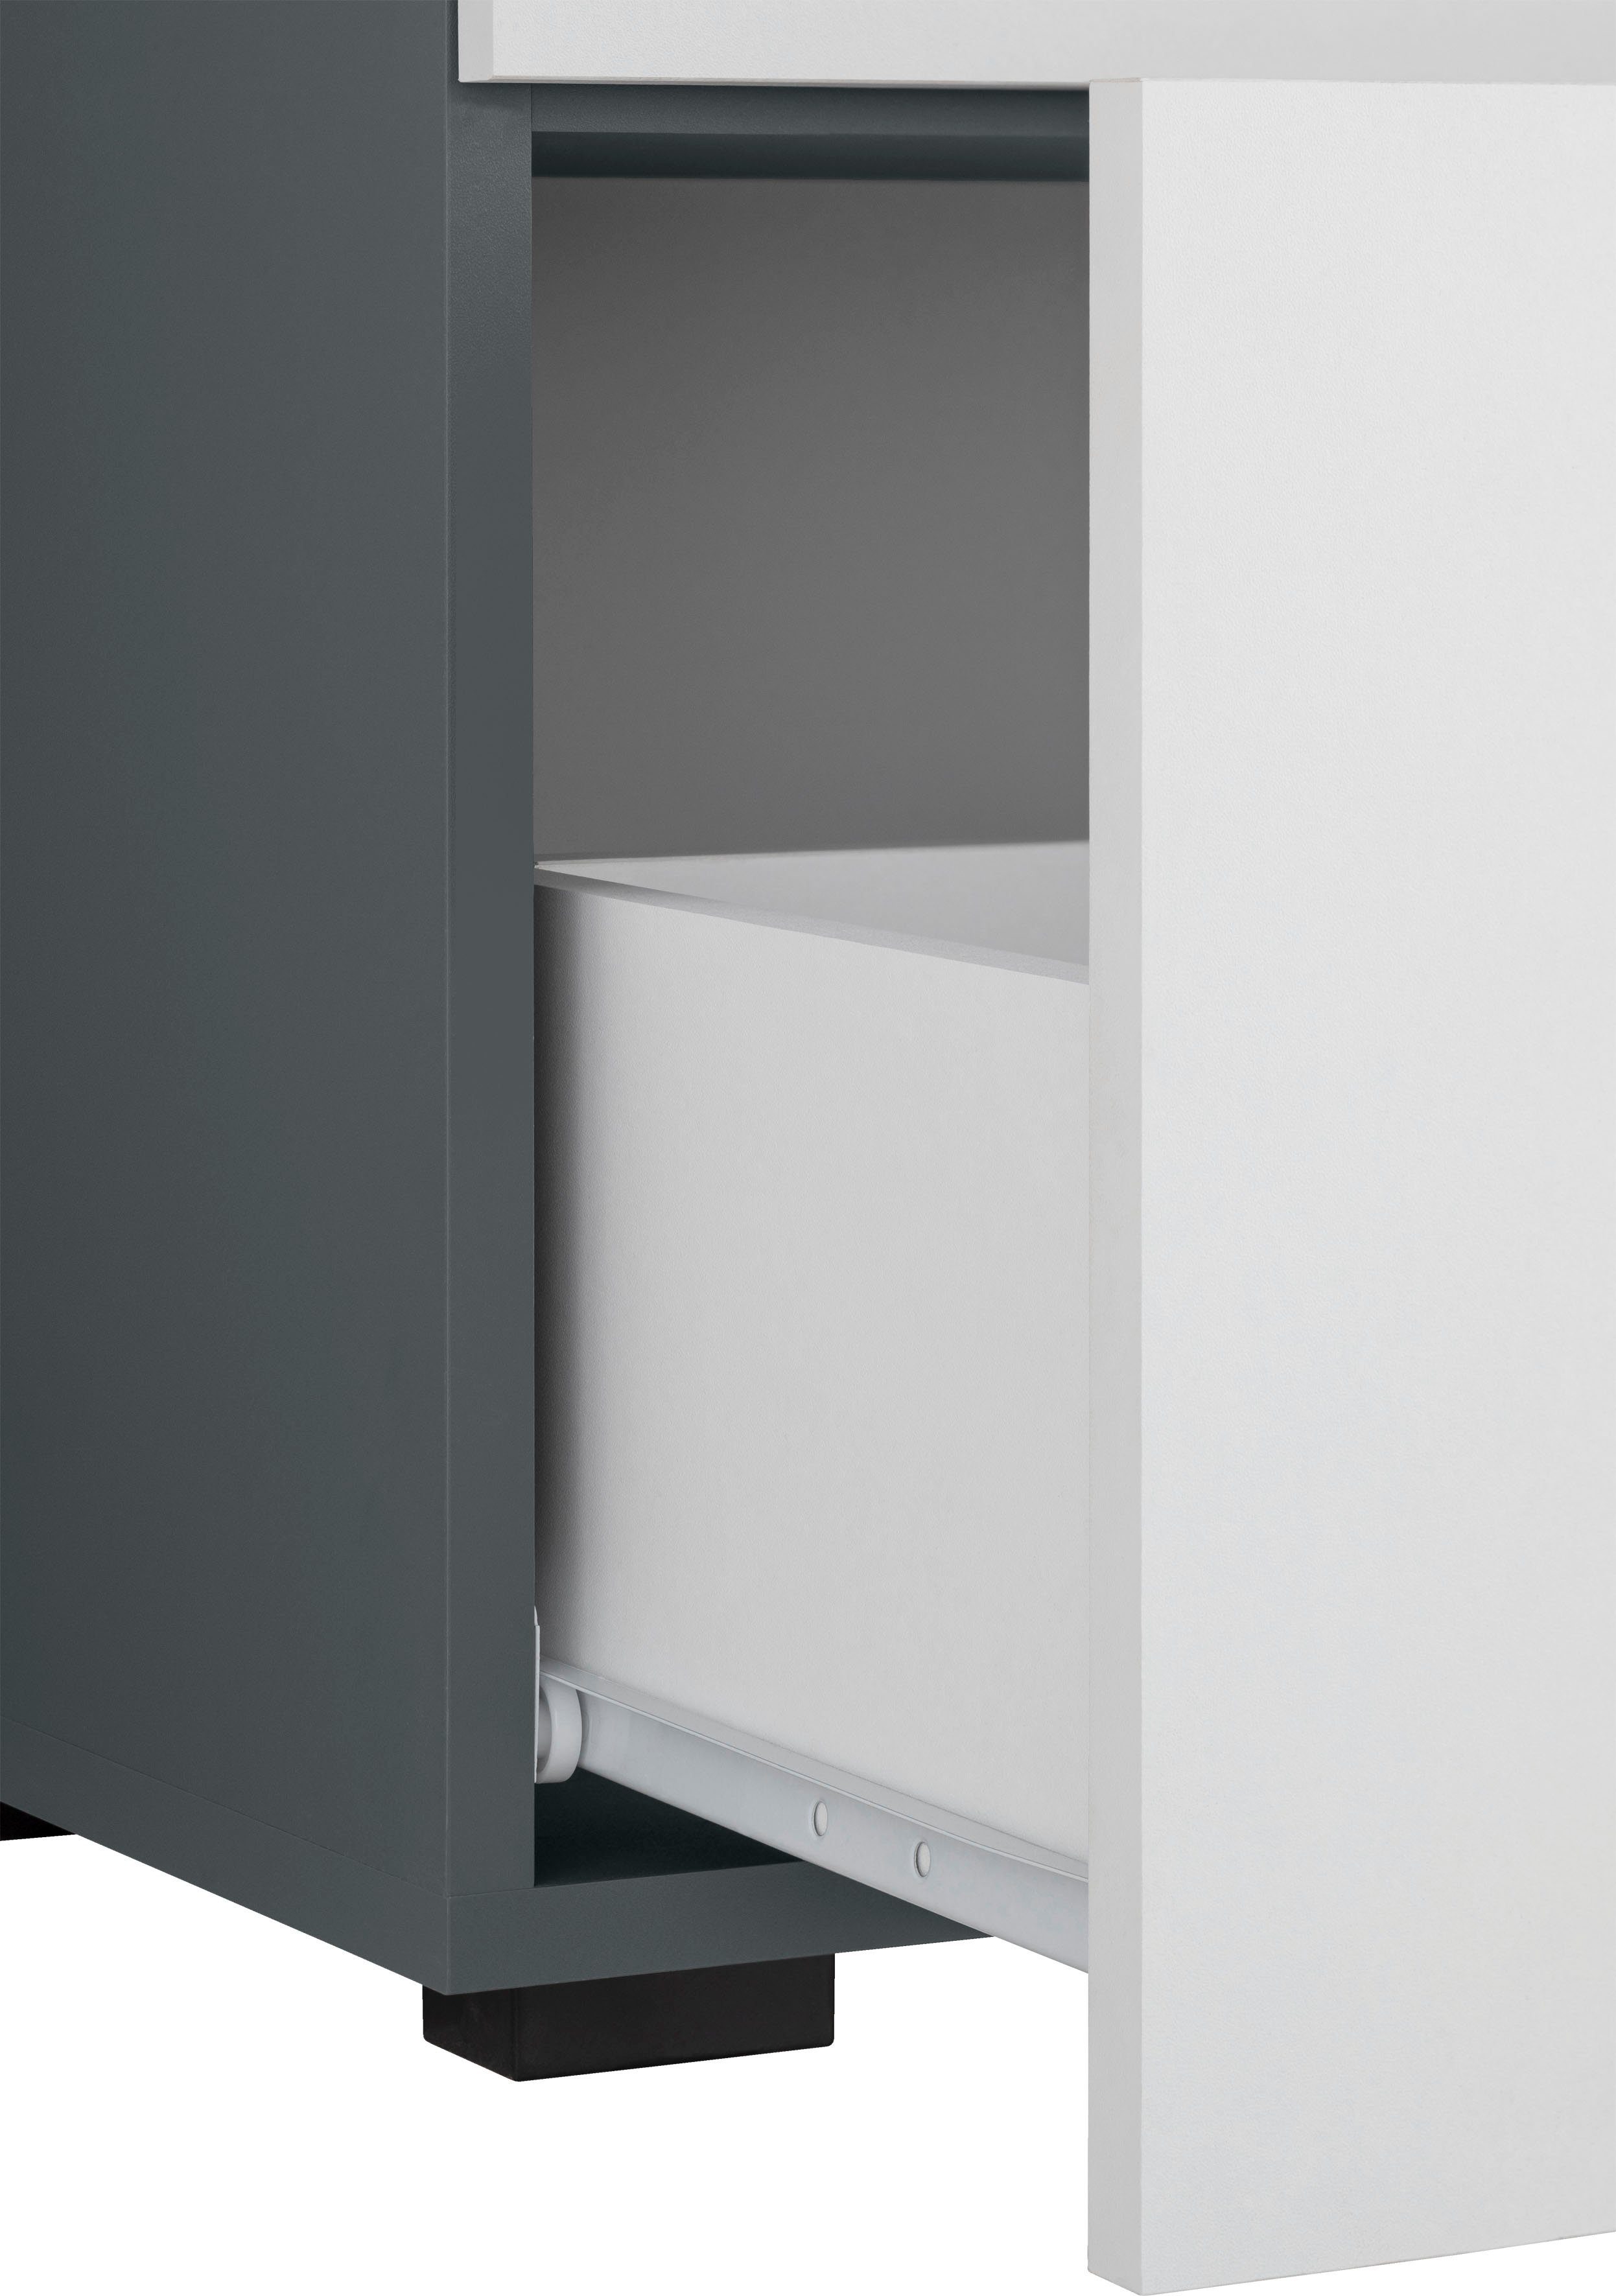 INOSIGN Waschbeckenunterschrank Skara mit Höhe 55 cm, Griffe, anthrazit/weiß cm schwarze Breite 80 und Schubkasten, Klappe